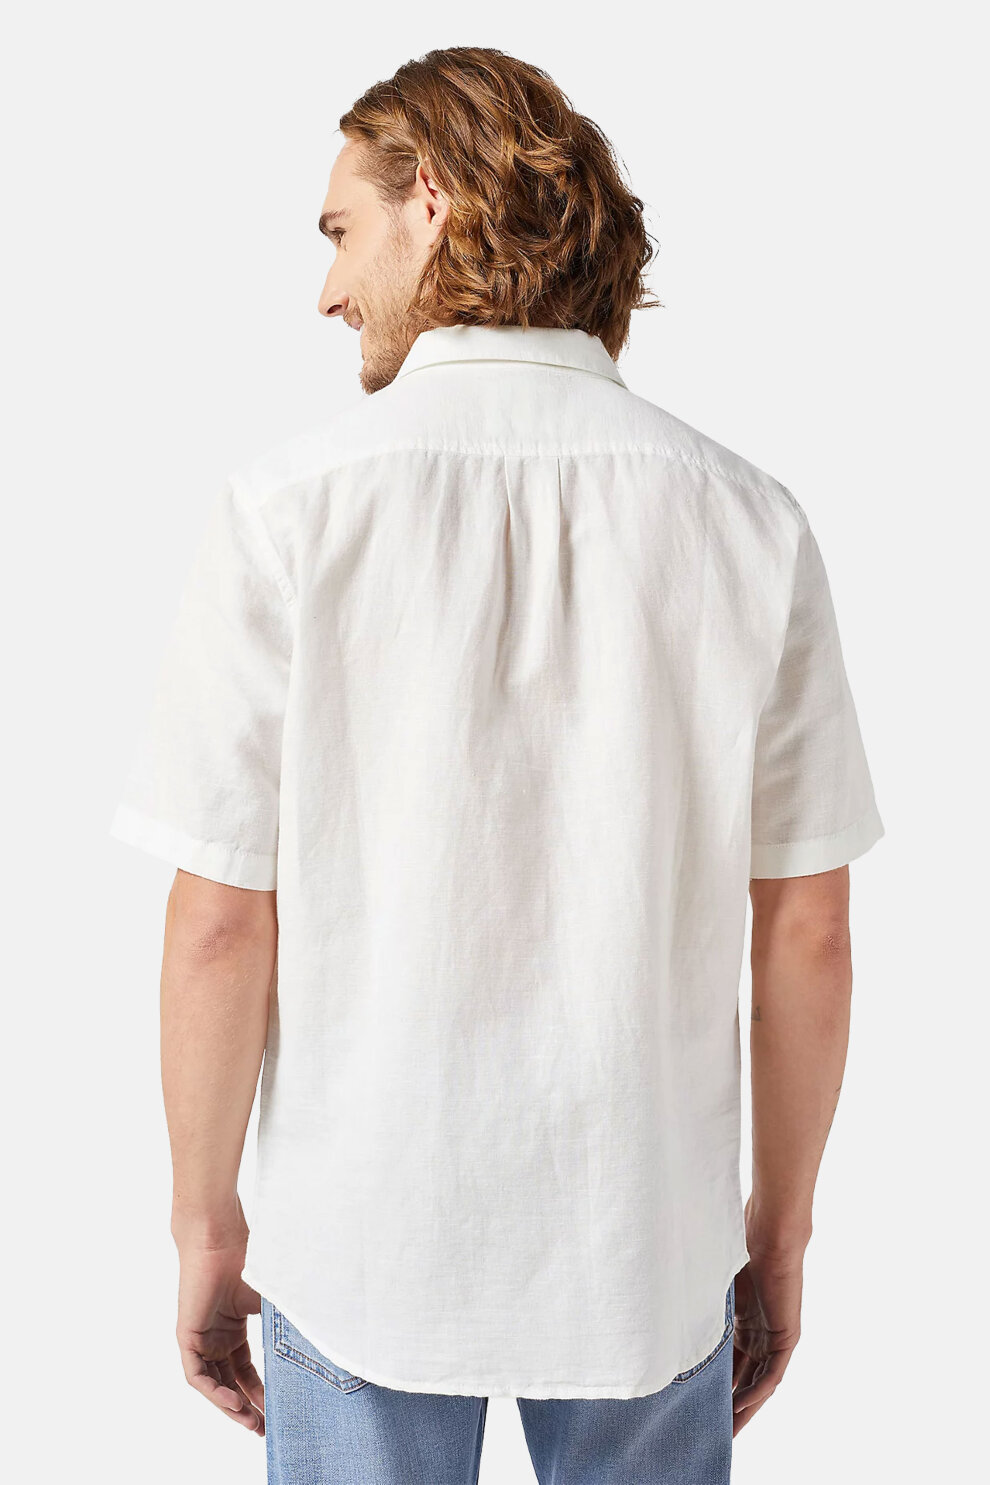 MUŠKARCI - Košulje - Wrangler košulja - Kratki rukavi - Bijela